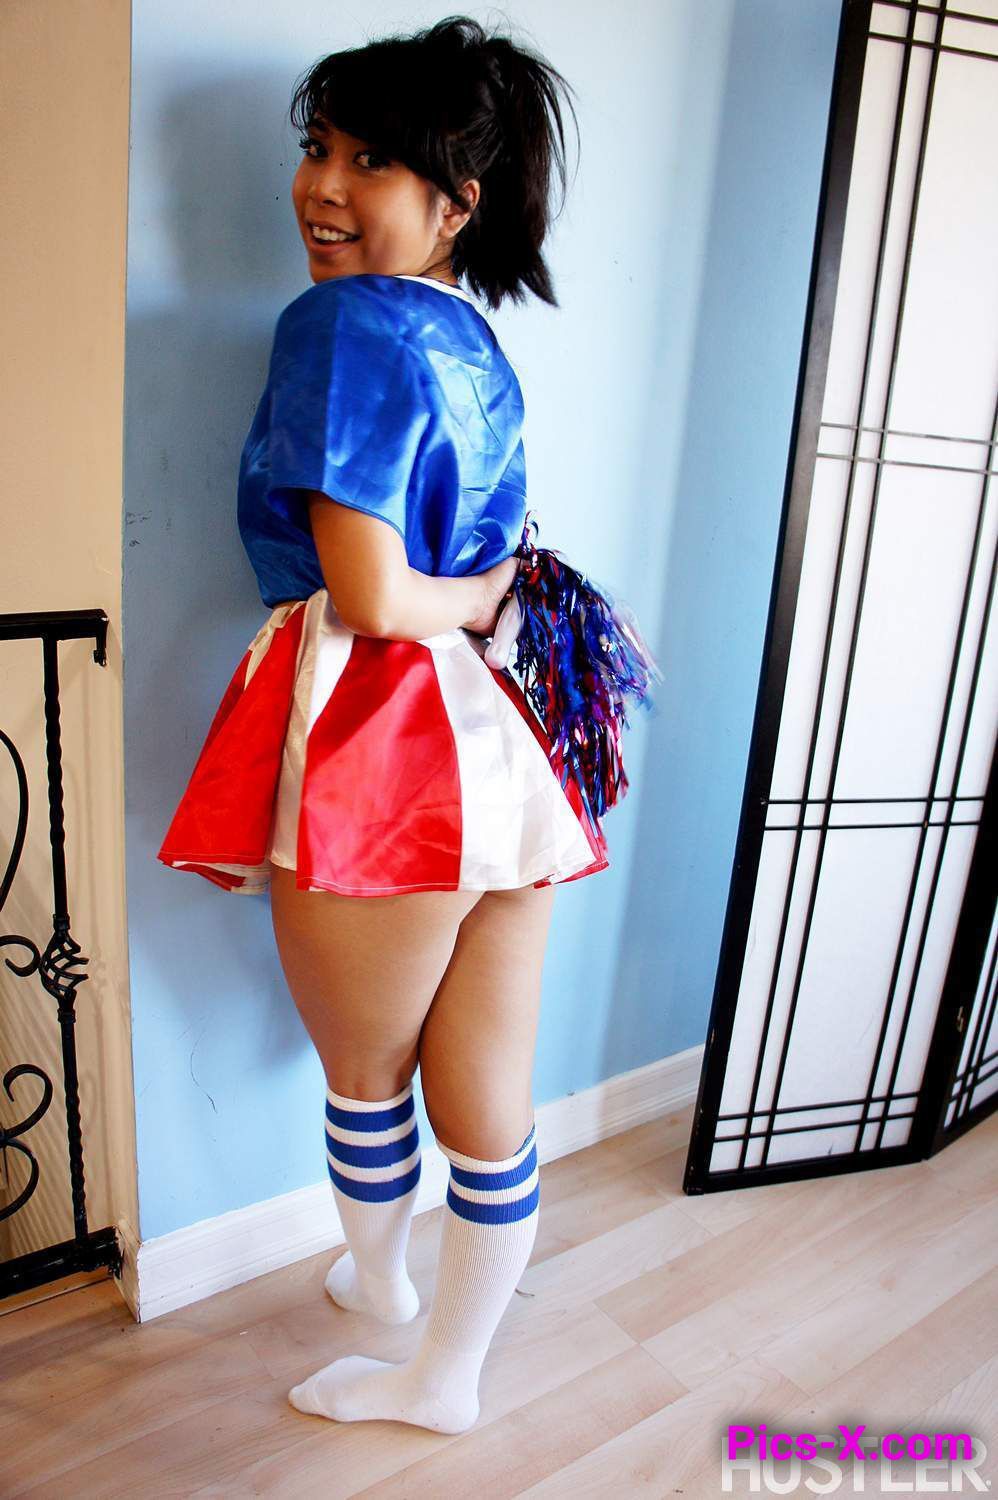 May Lee in Naughty Cheerleaders 4 - Image 1